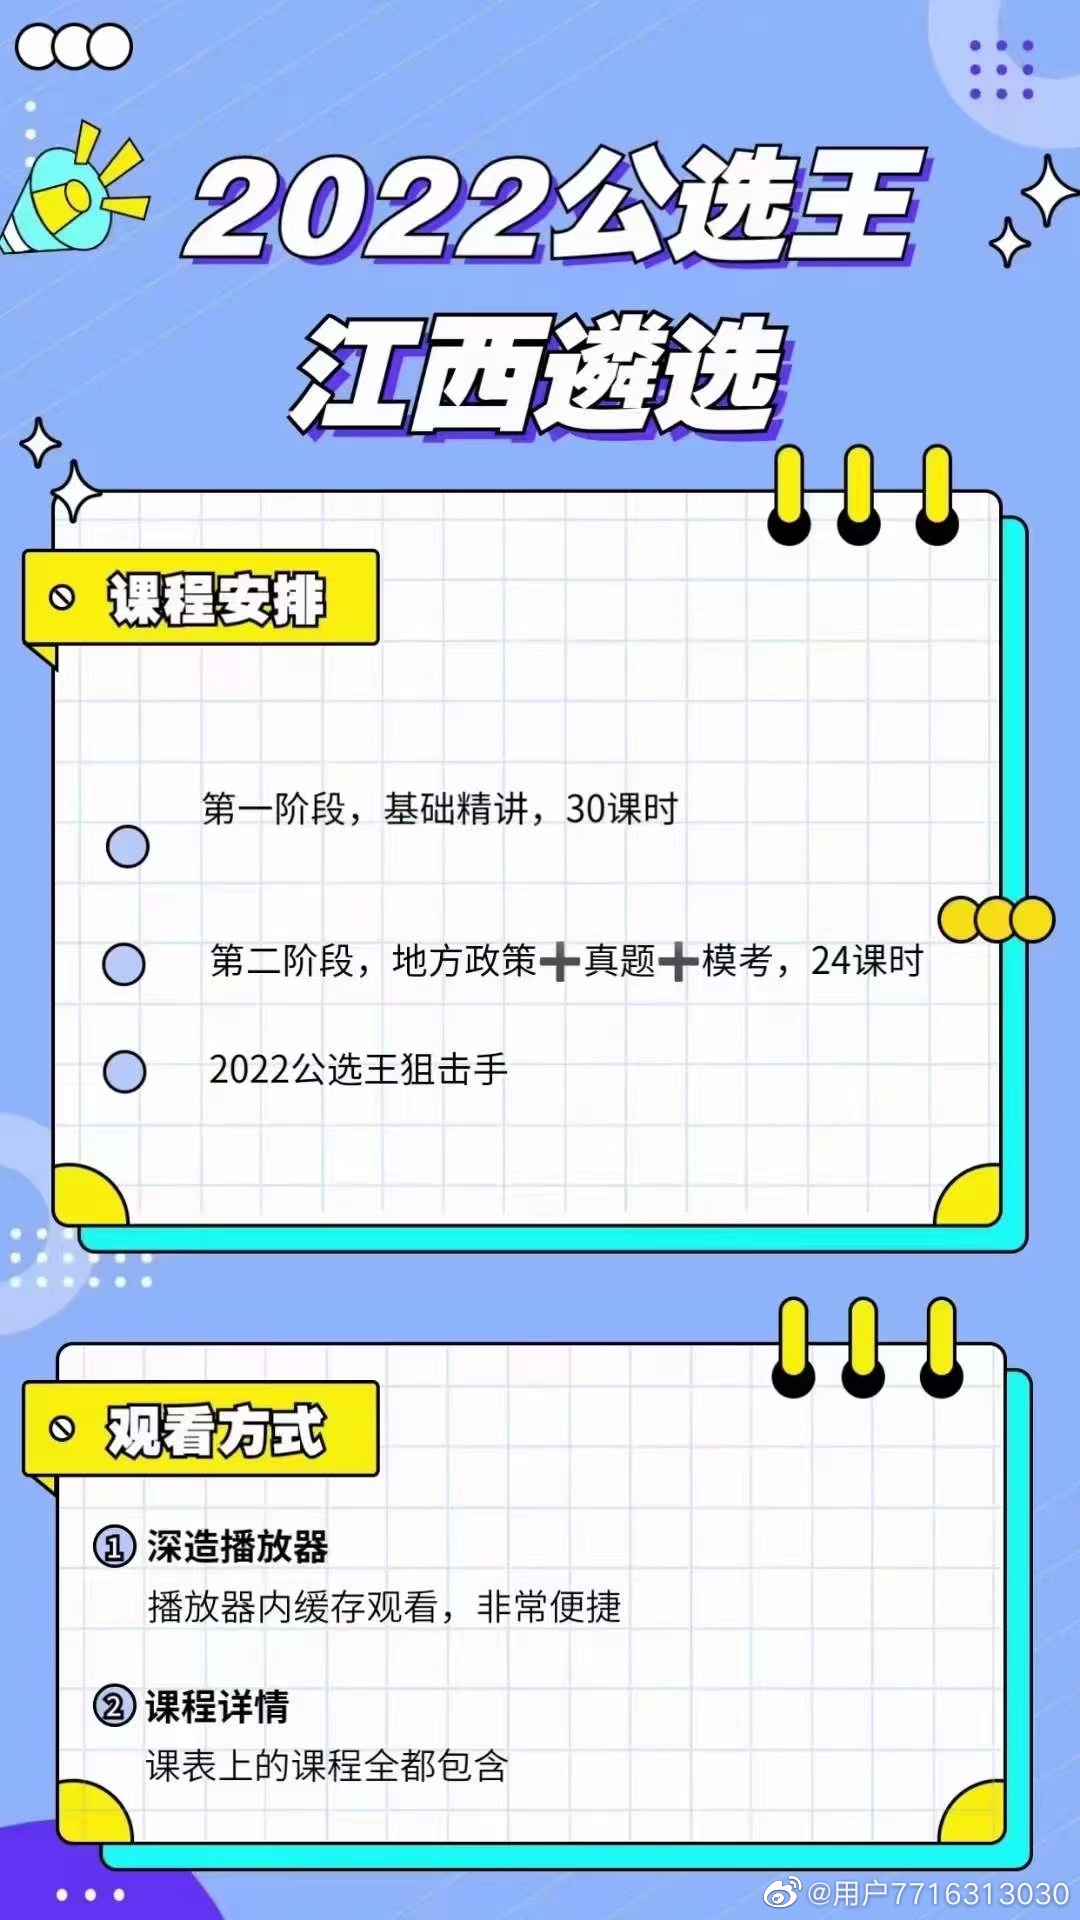 2022江西遴选公选王笔试先锋班